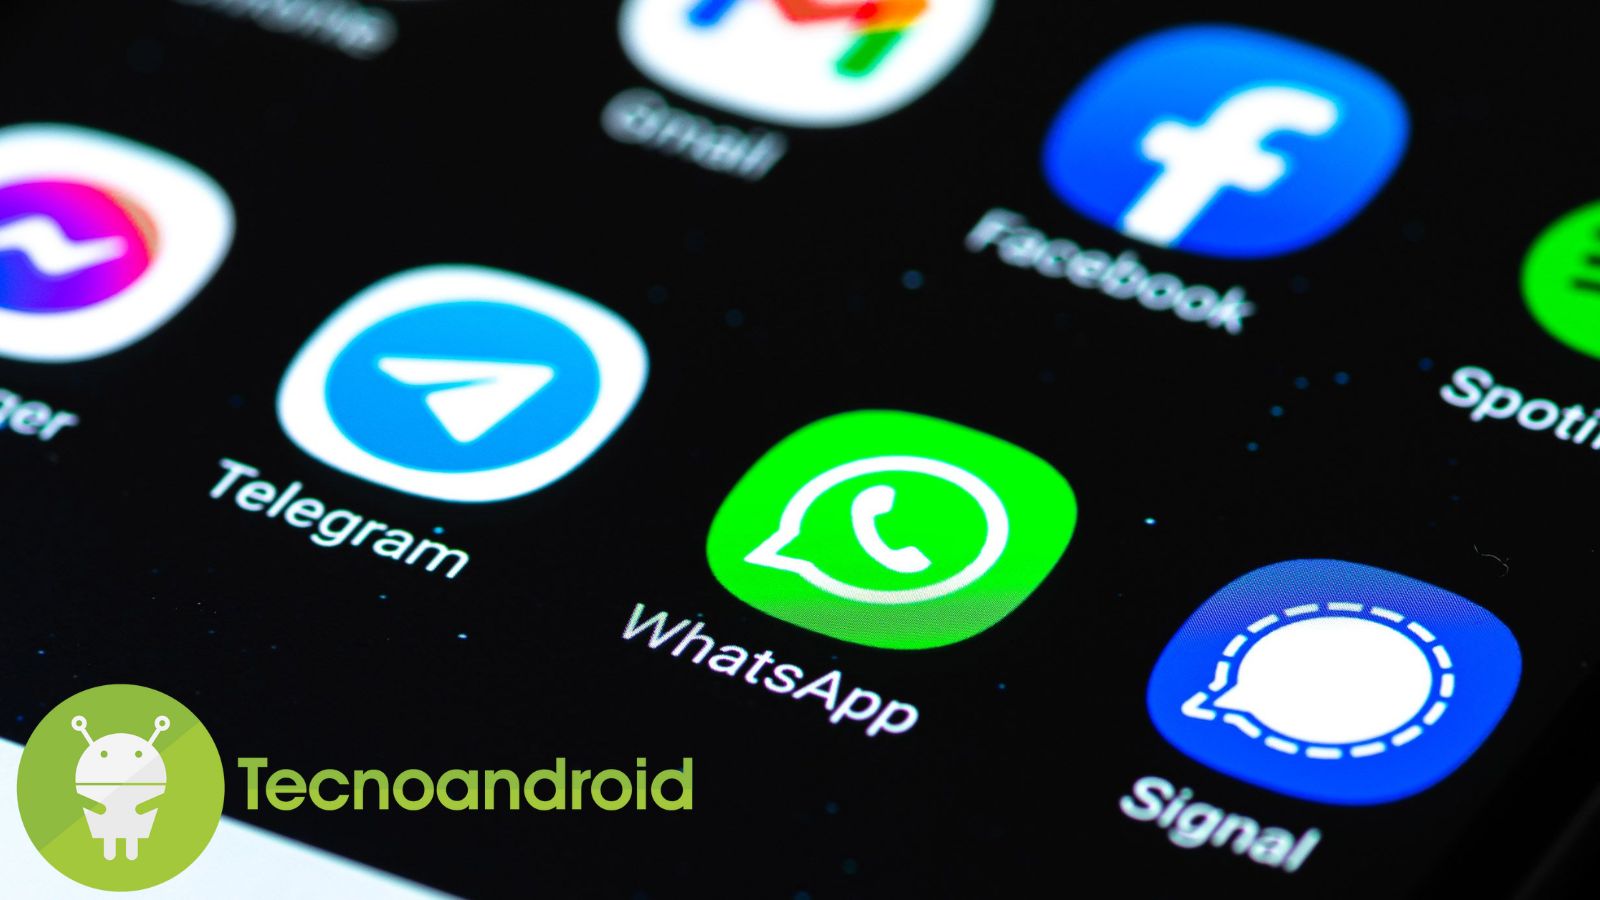 Le chat di terze parti su WhatsApp avranno una sicurezza più debole